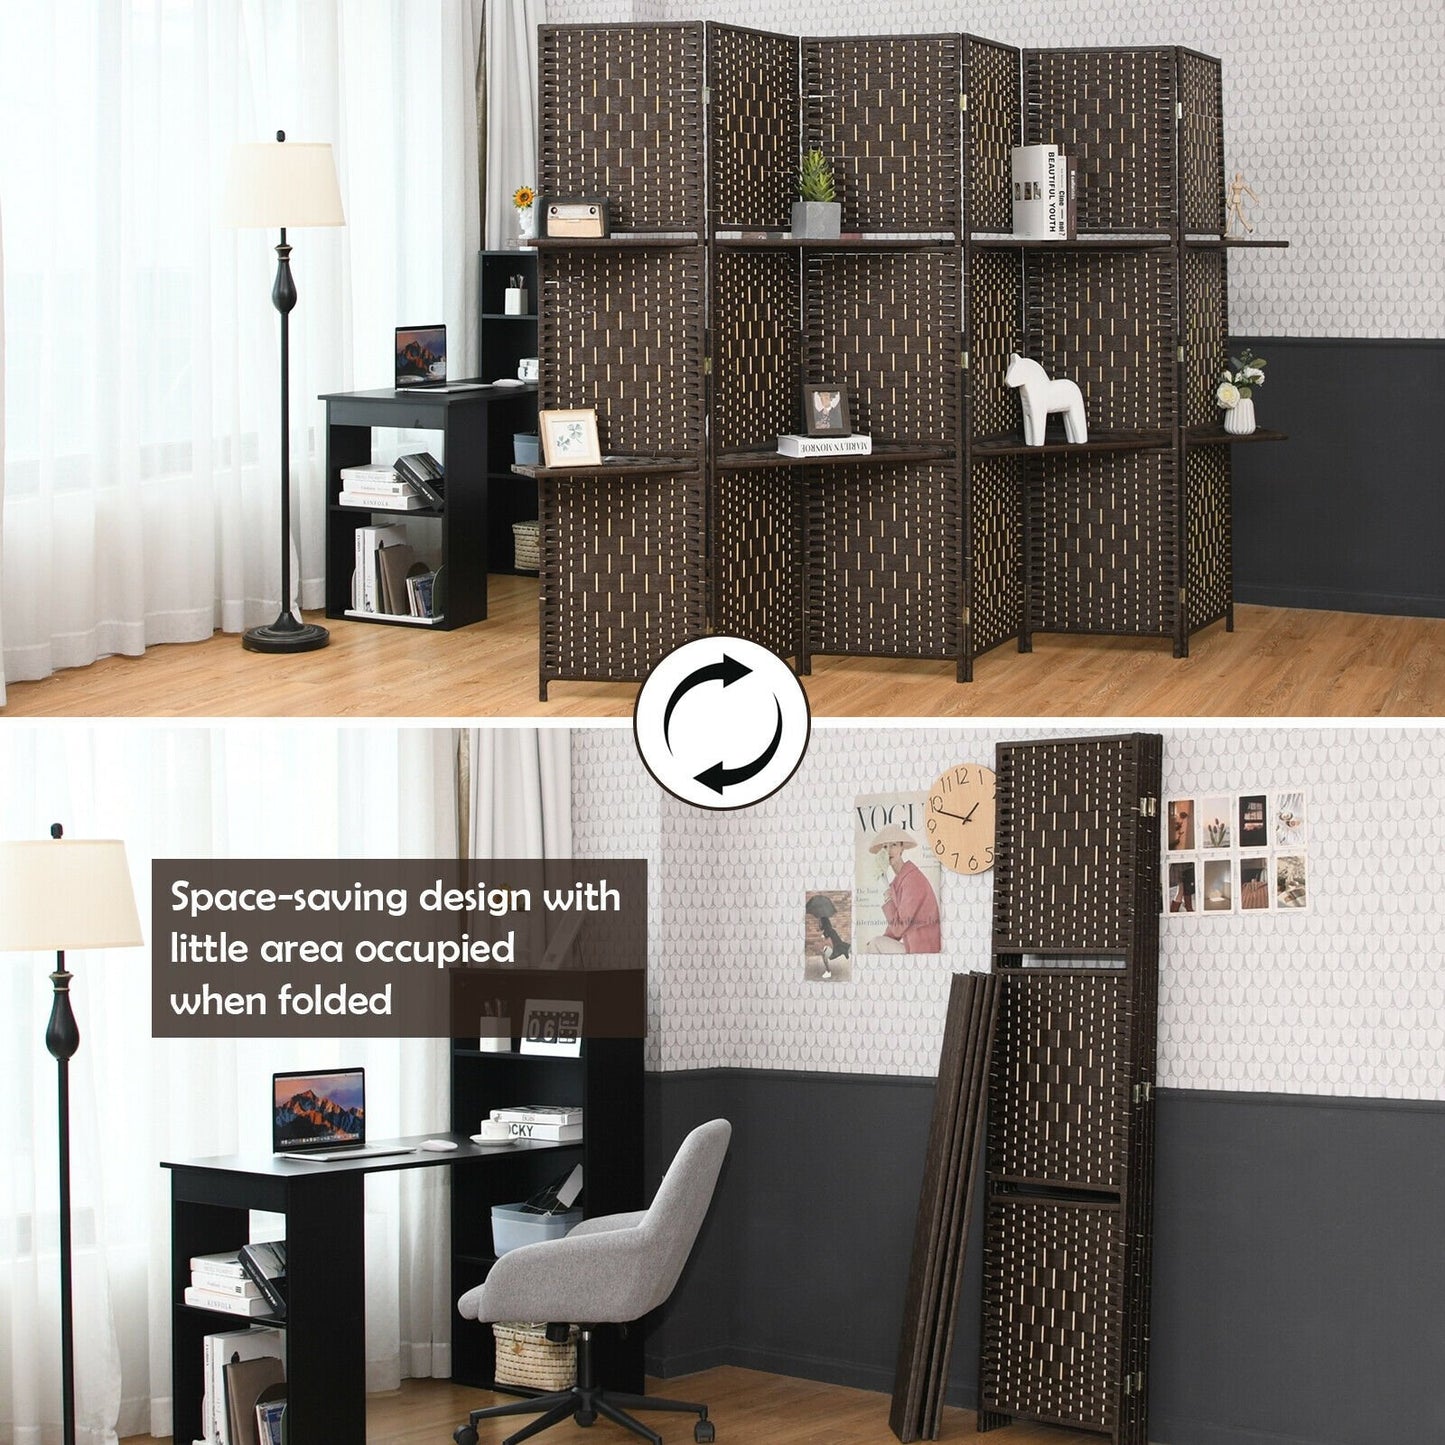 6 Panel Folding Weave Fiber Room Divider with 2 Display Shelves , Brown